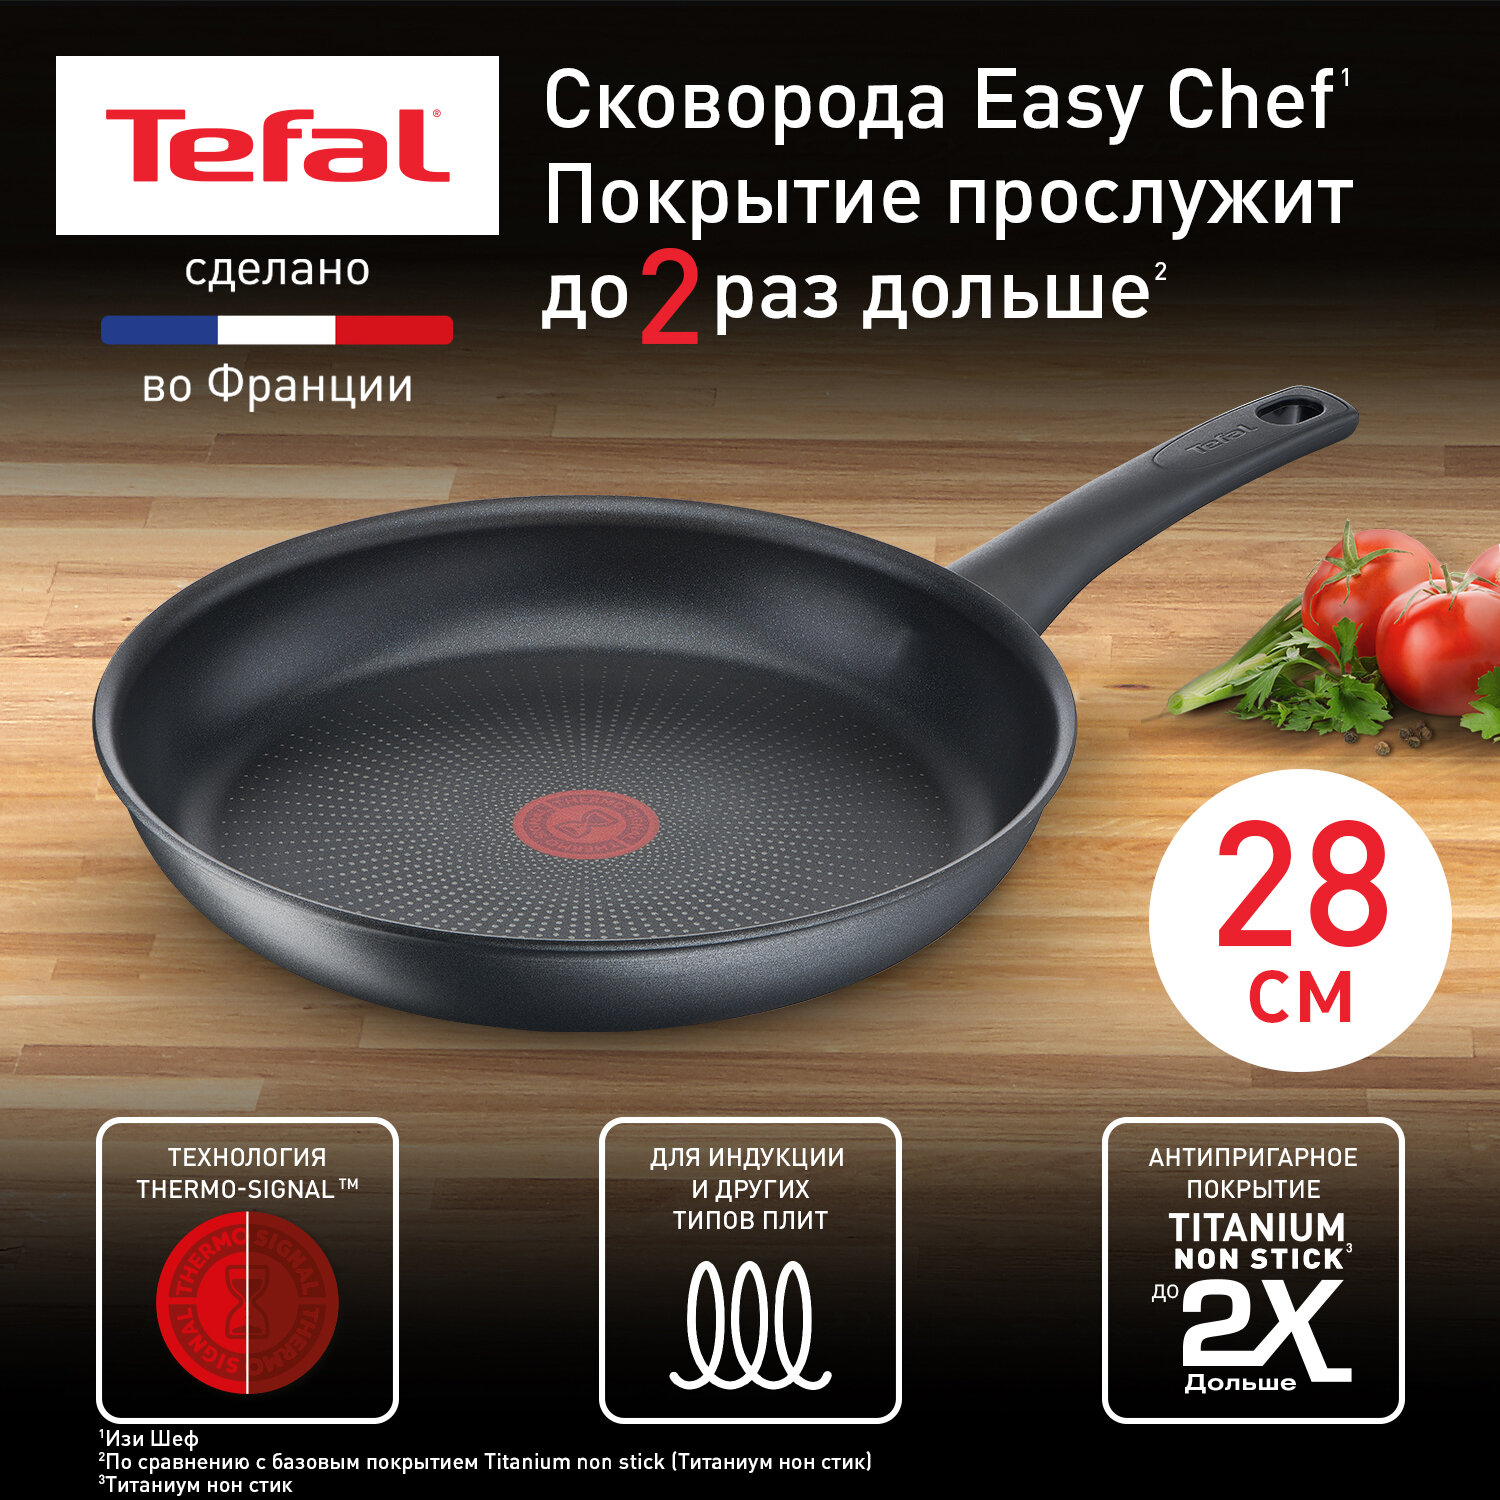 Сковорода Tefal Easy Chef G2700623, диаметр 28 см, с индикатором температуры, с антипригарным покрытием, для газовых, электрических и индукционных плит, сделано во Франции